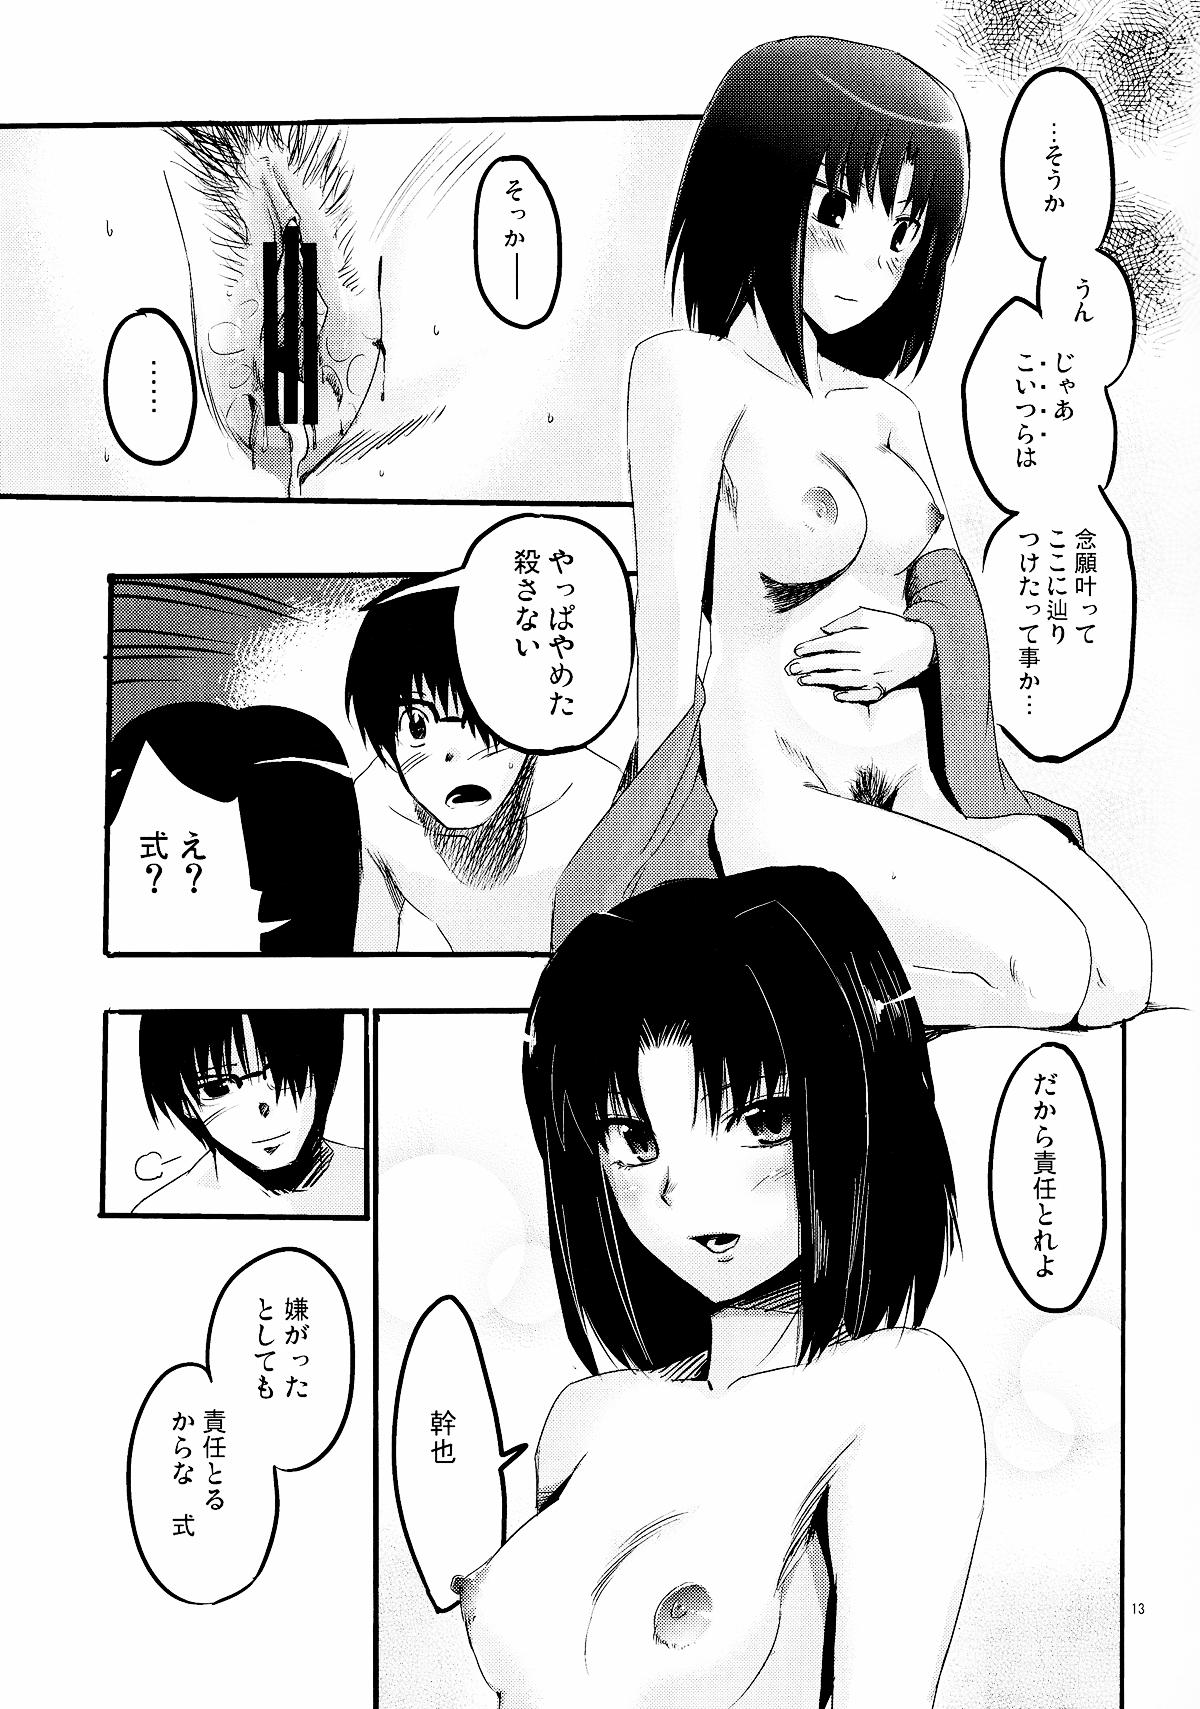 Rough Sex Furimawasareru Hitotachi - Kara no kyoukai 3way - Page 13